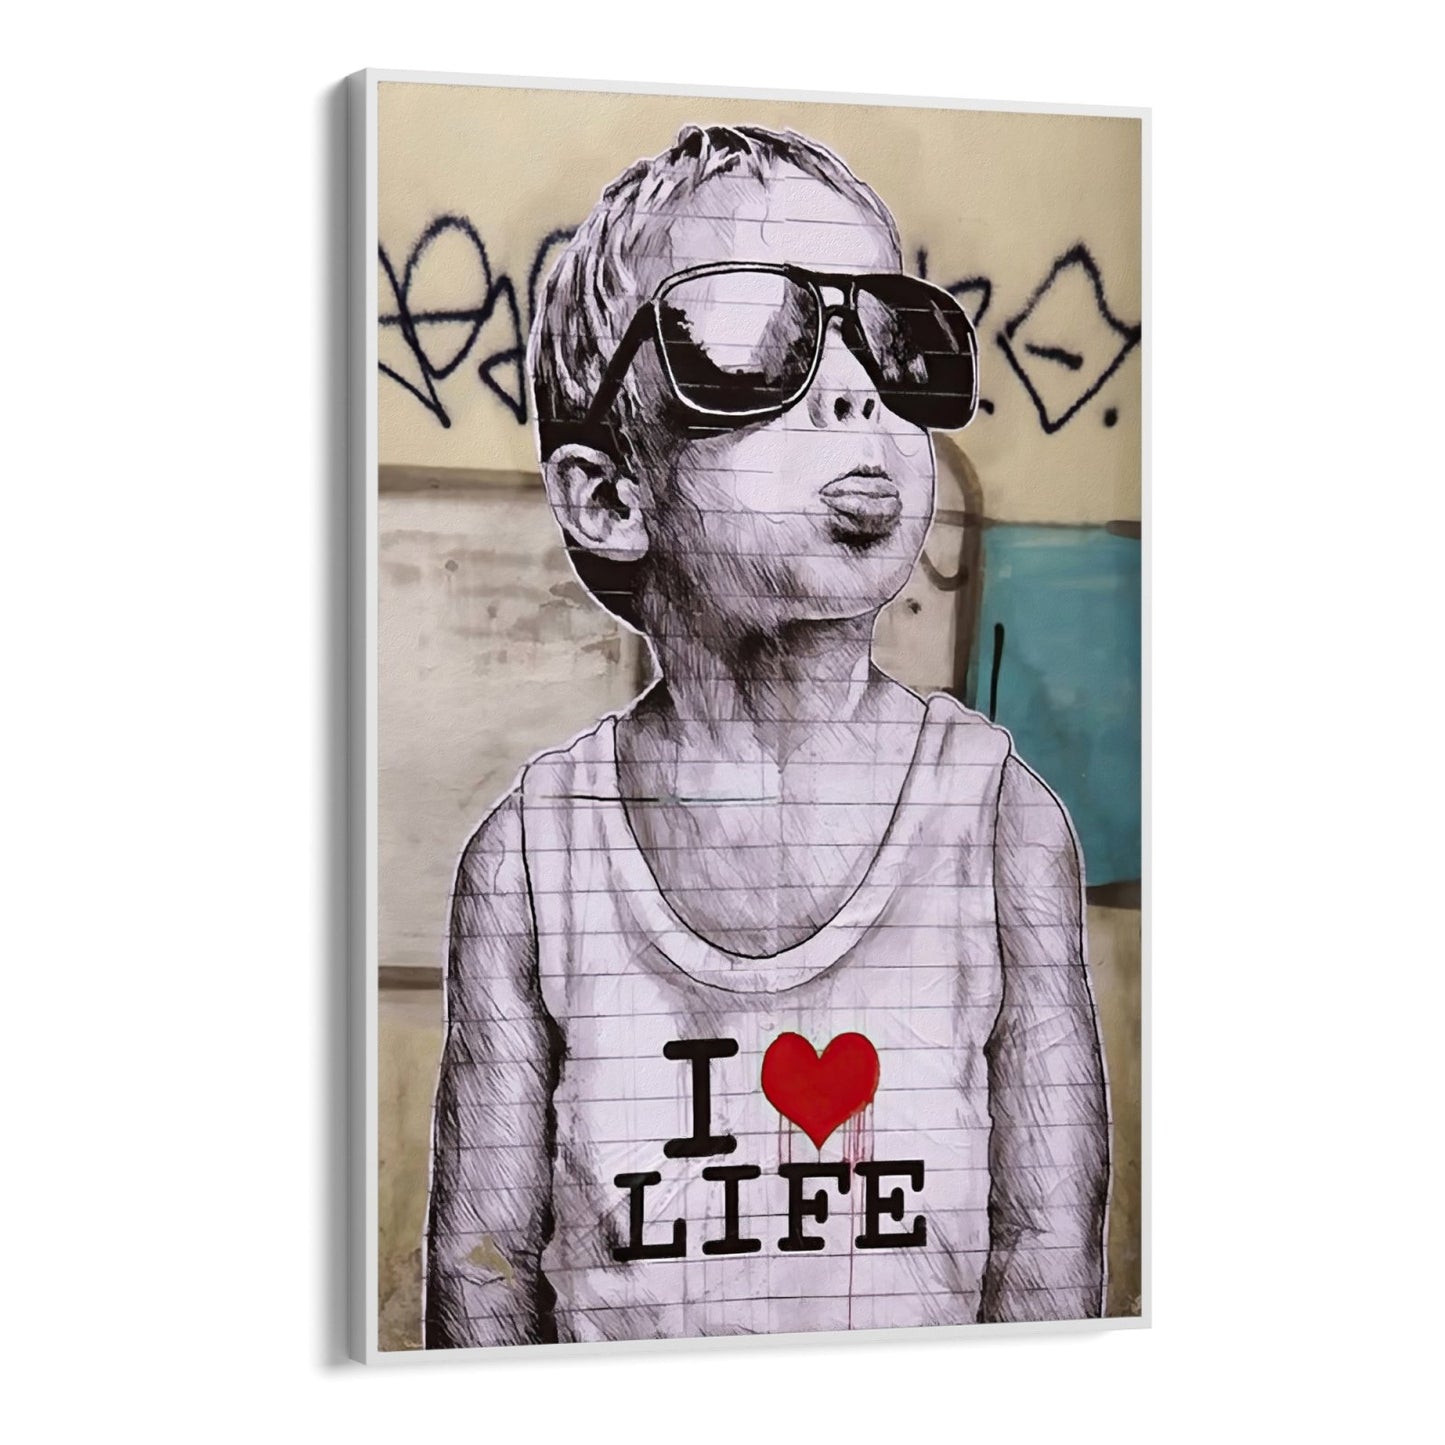 I love life, Banksy